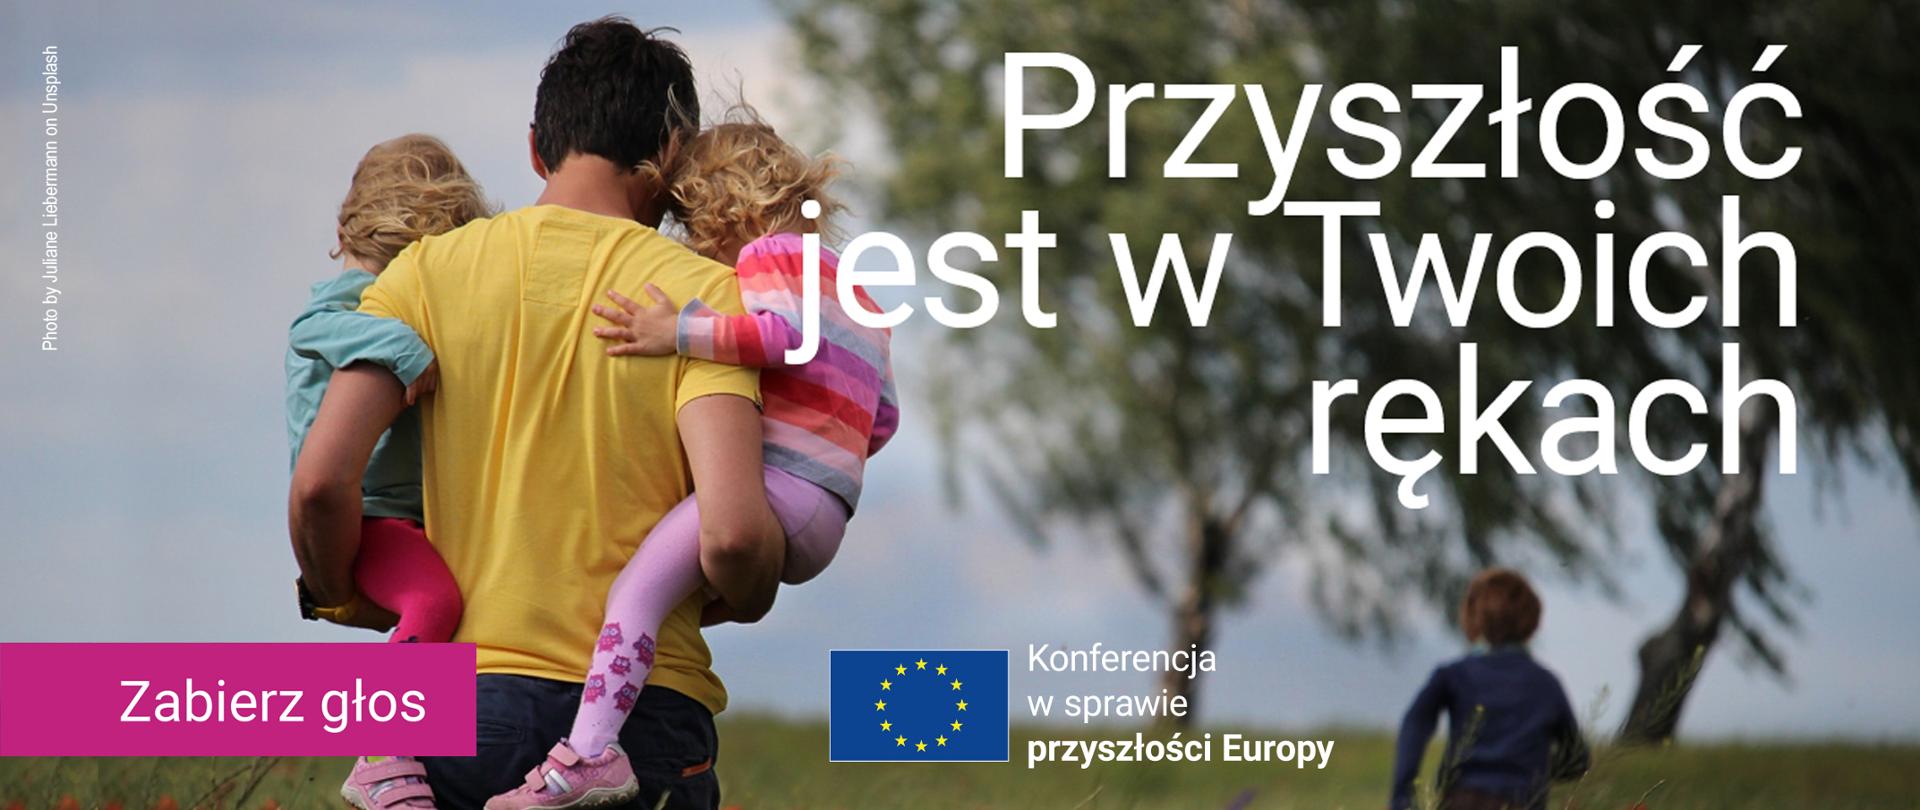 Infografika do komunikatu "Weź udział w cyklu konferencji w sprawie przyszłości Europy".
Mężczyzna niosący po łące na rękach dwie małe dziewczynki. 